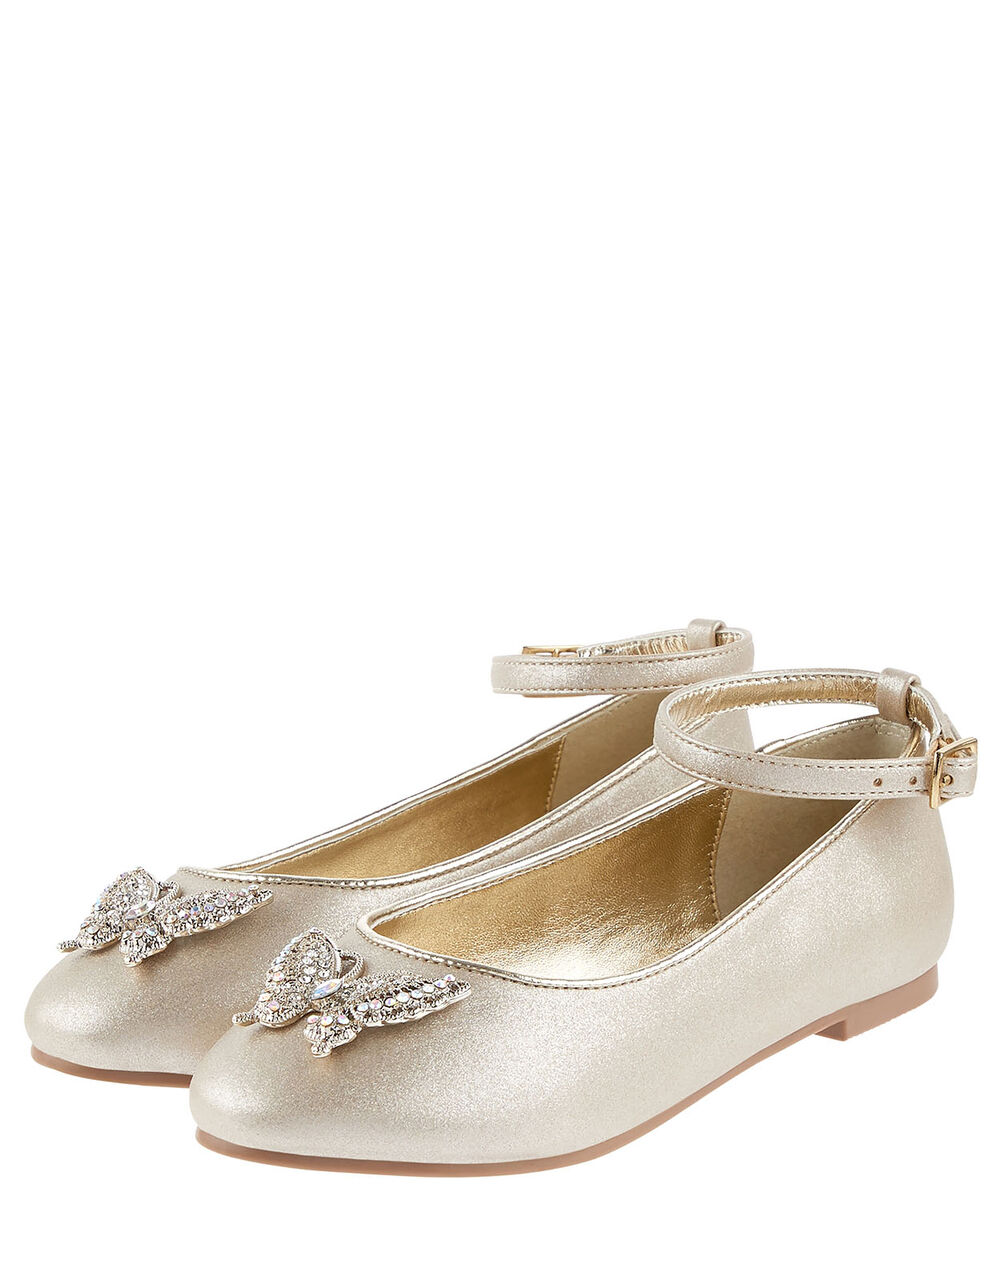 Children Children's Shoes & Sandals | Butterfly Ballerina Flats Gold - TK30171